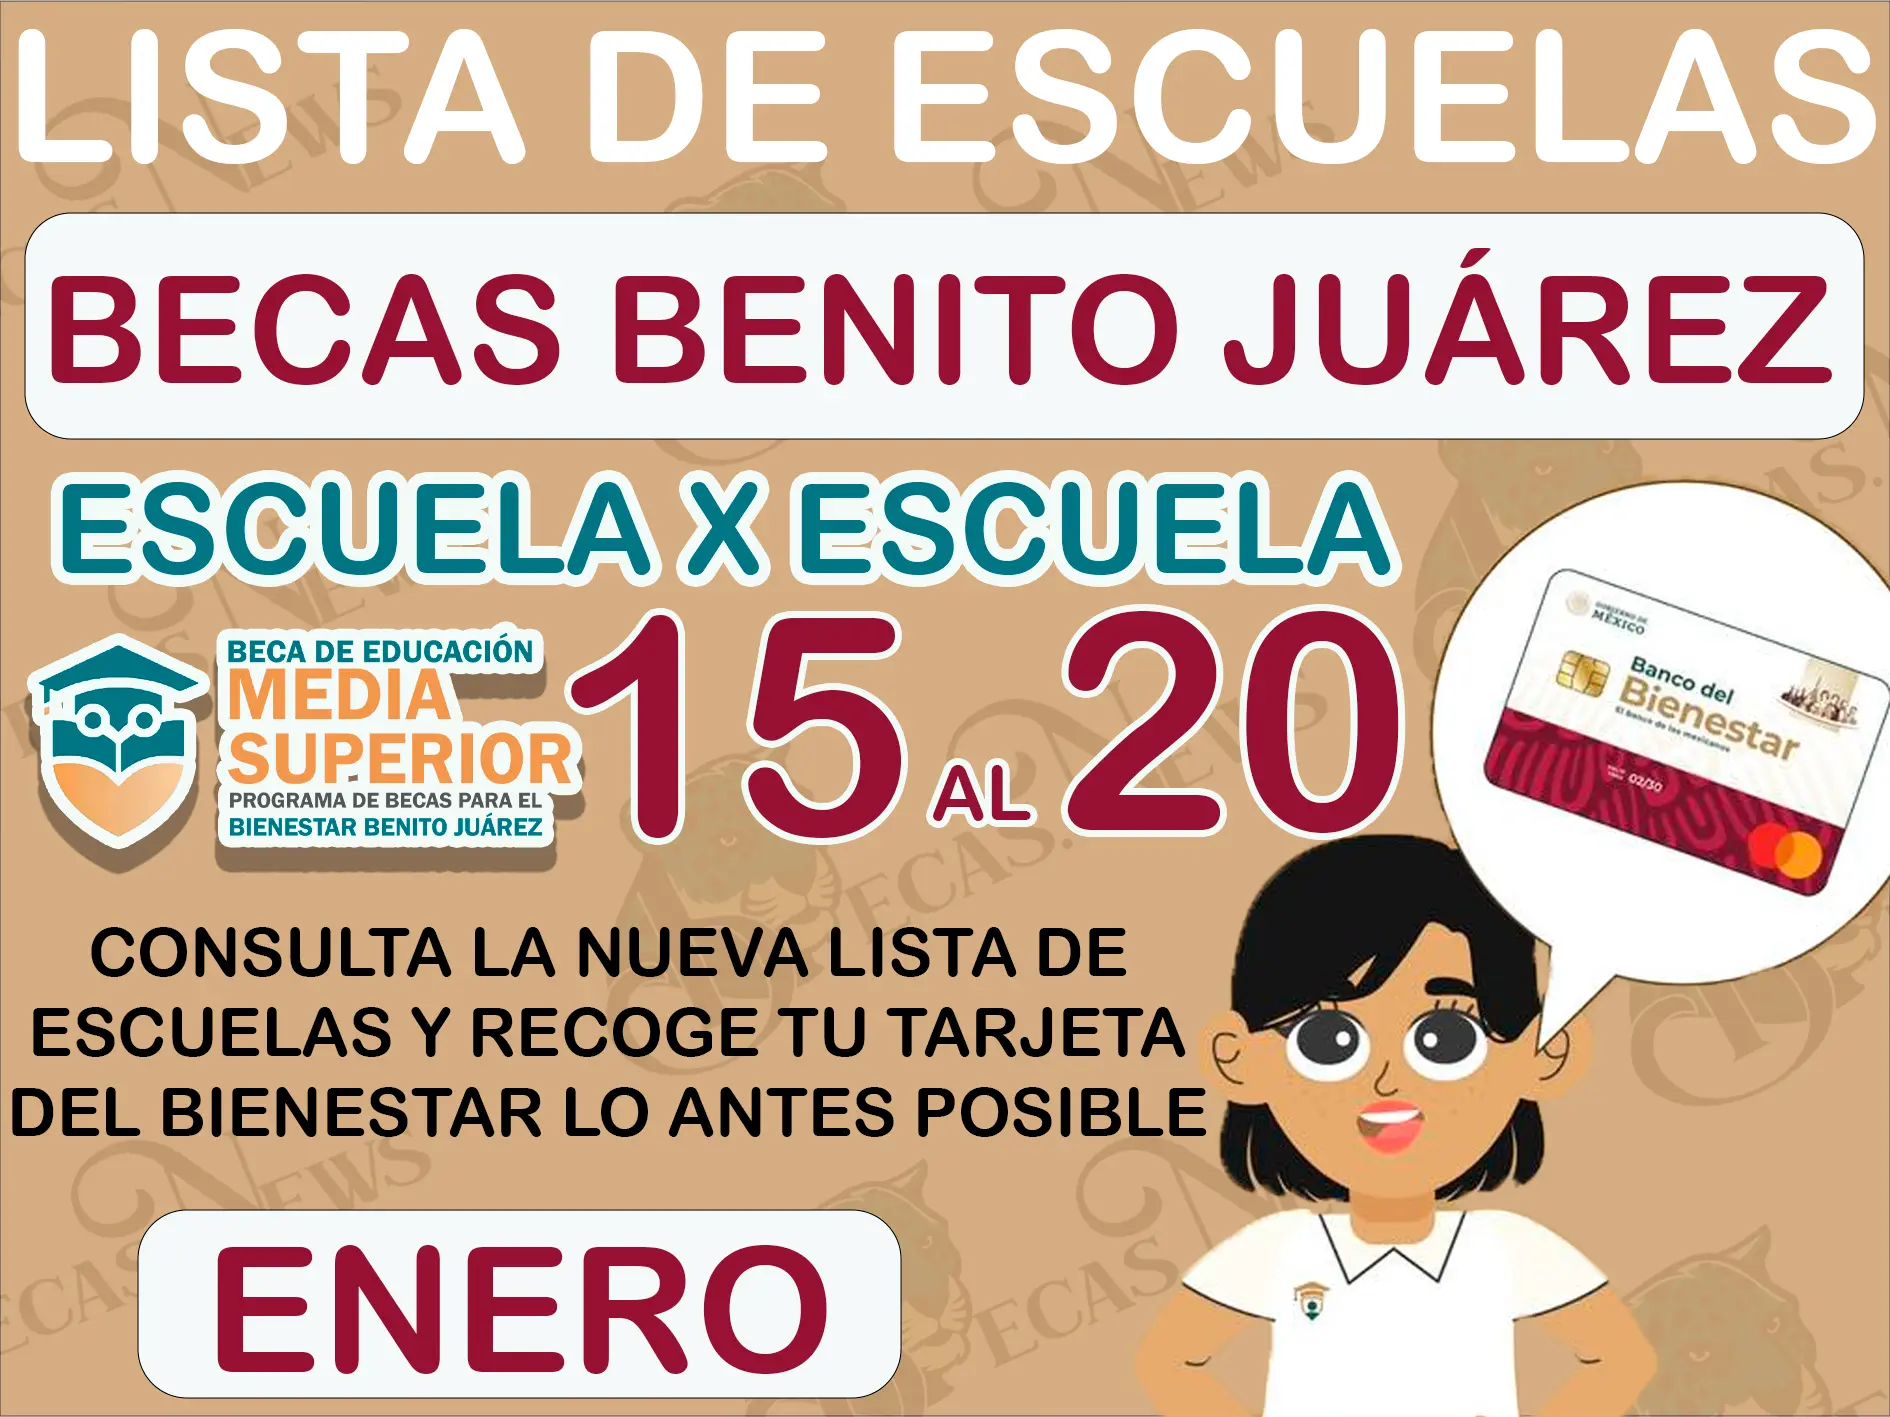 Becas Benito Juárez: Esta es la Lista de escuelas que les corresponde recibir su tarjeta del bienestar del 15 al 20 de enero